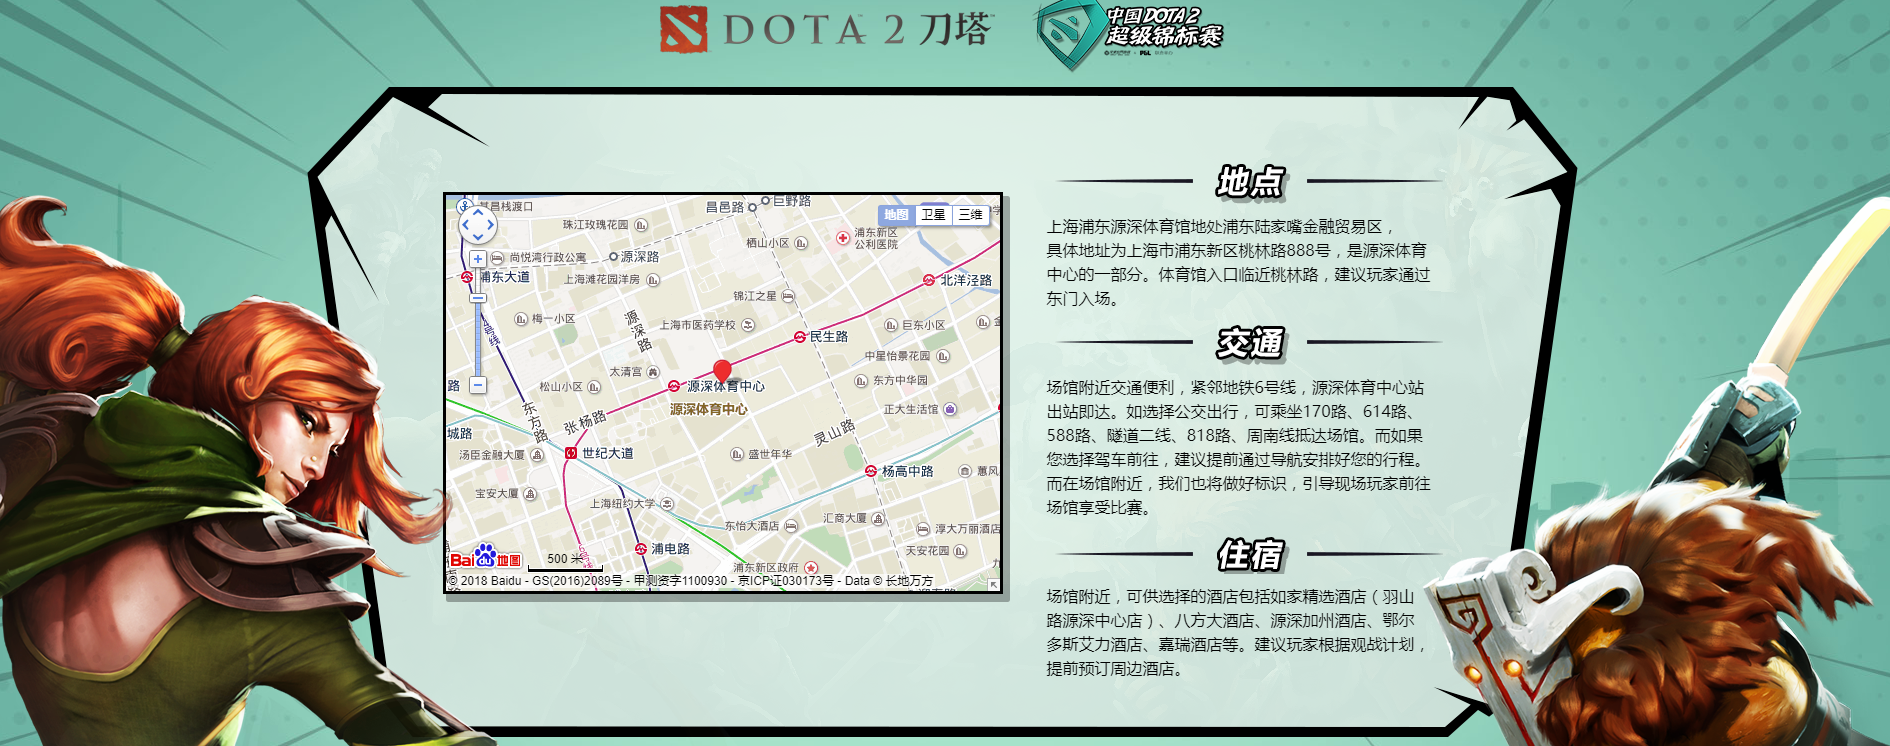 《中国DOTA2超级锦标赛》门票